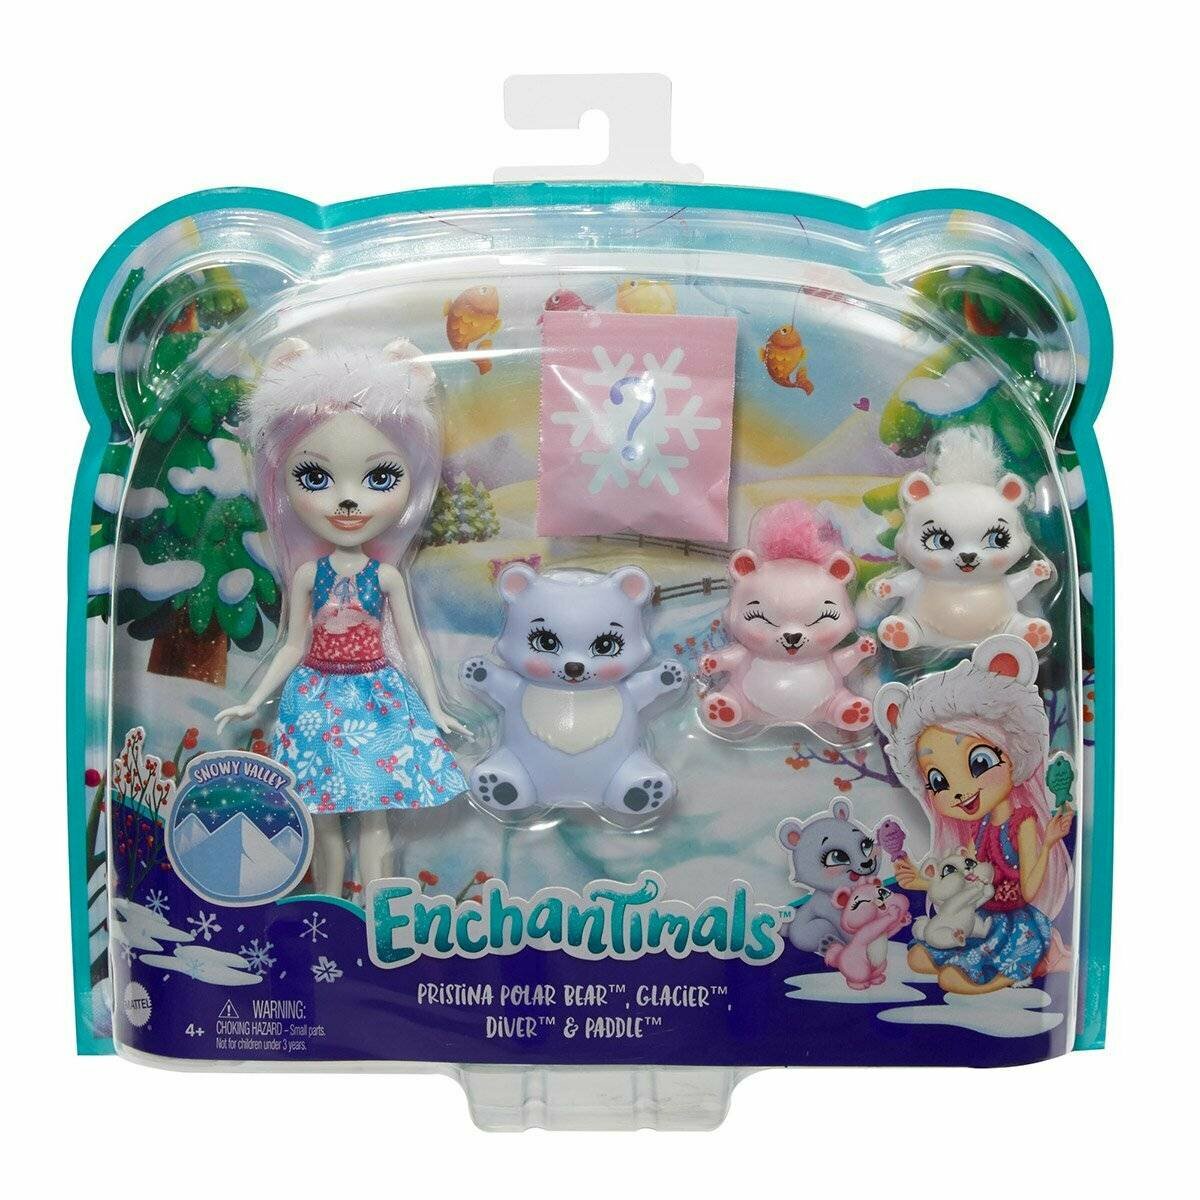 Кукла Enchantimals Пристина Полярная Миша с семьей. Белый медведь Енчантималс